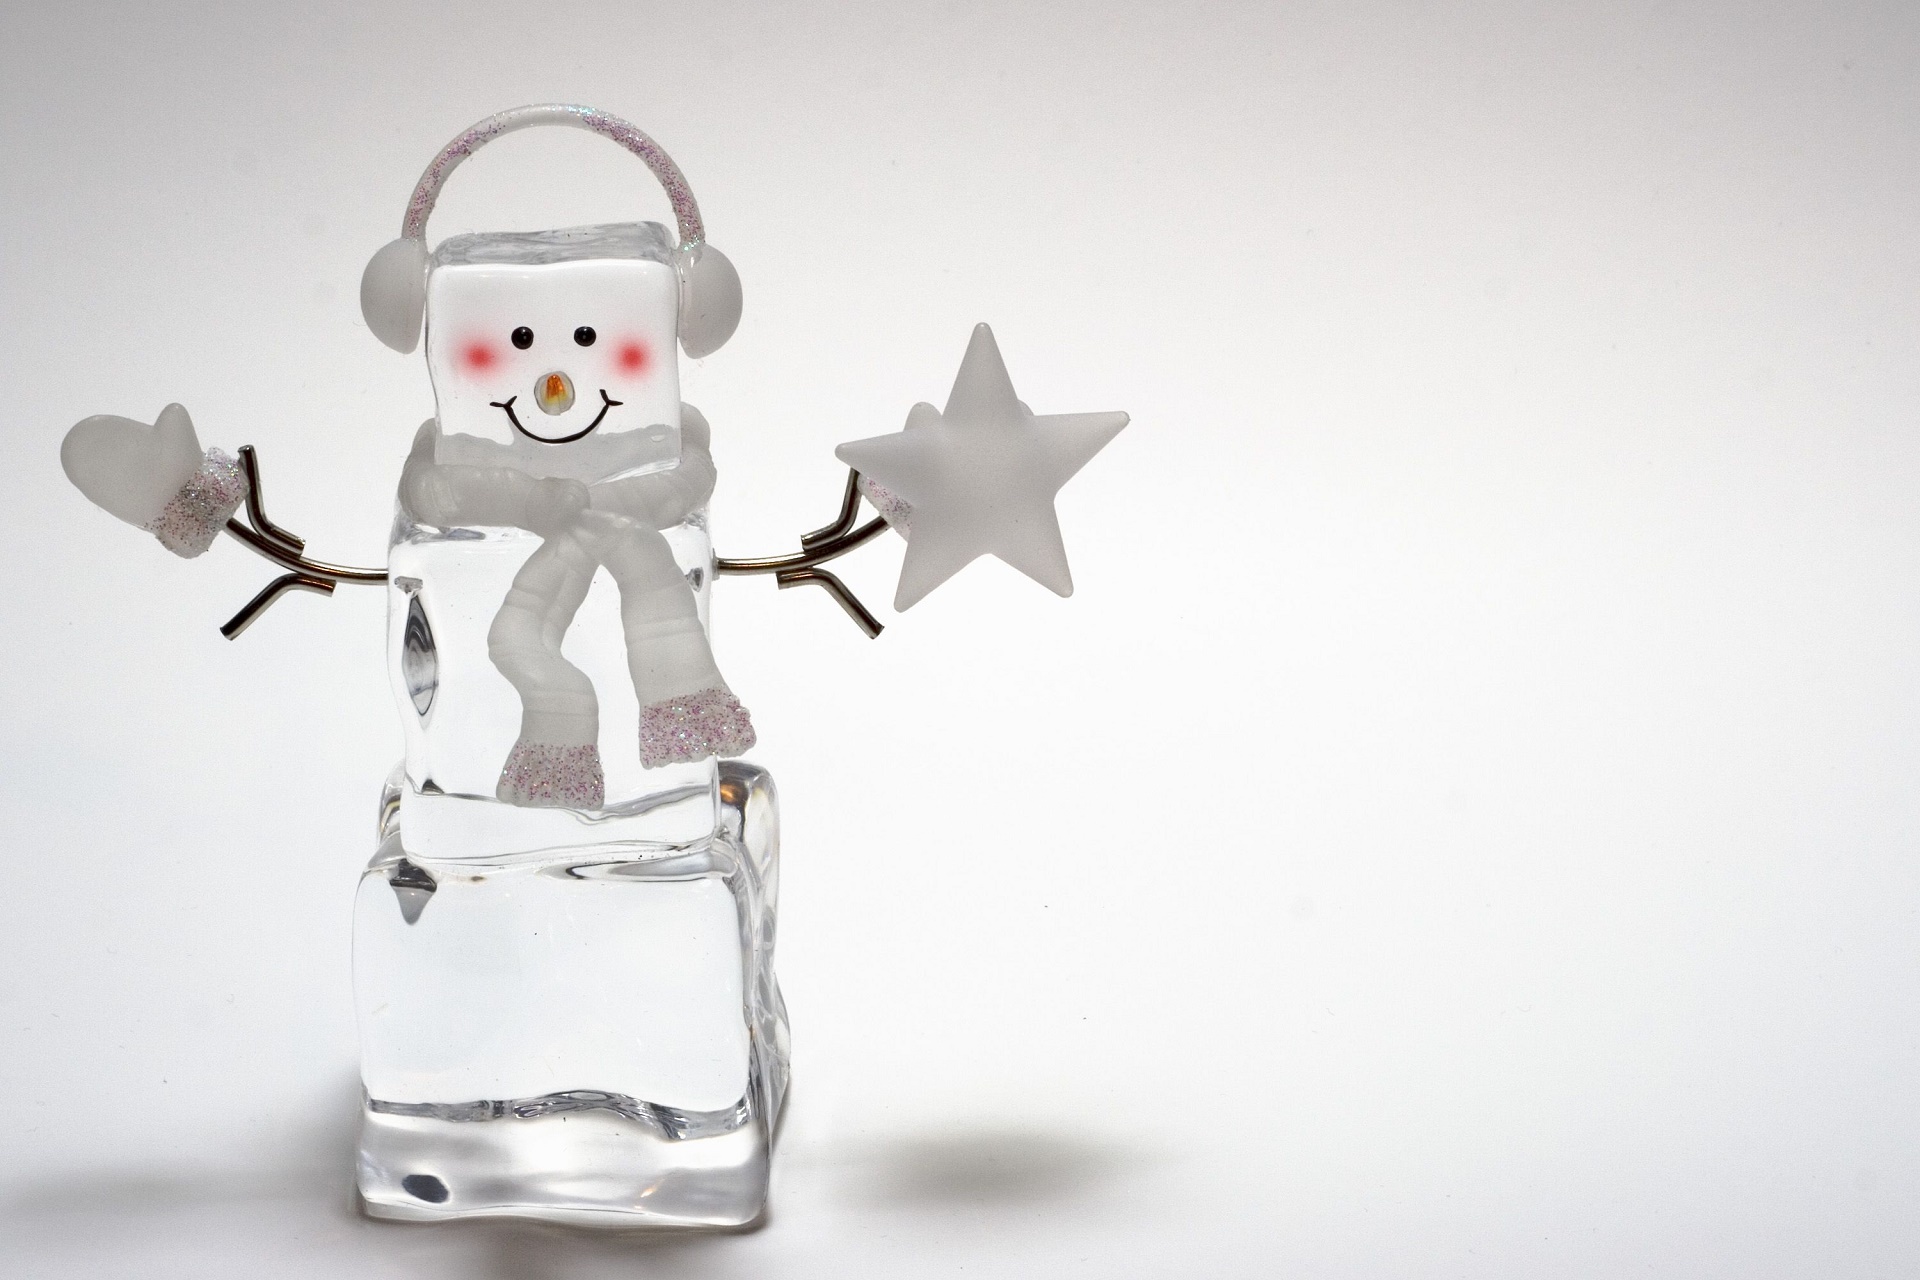 Скачать картинку Снеговик, Художественные в телефон бесплатно.